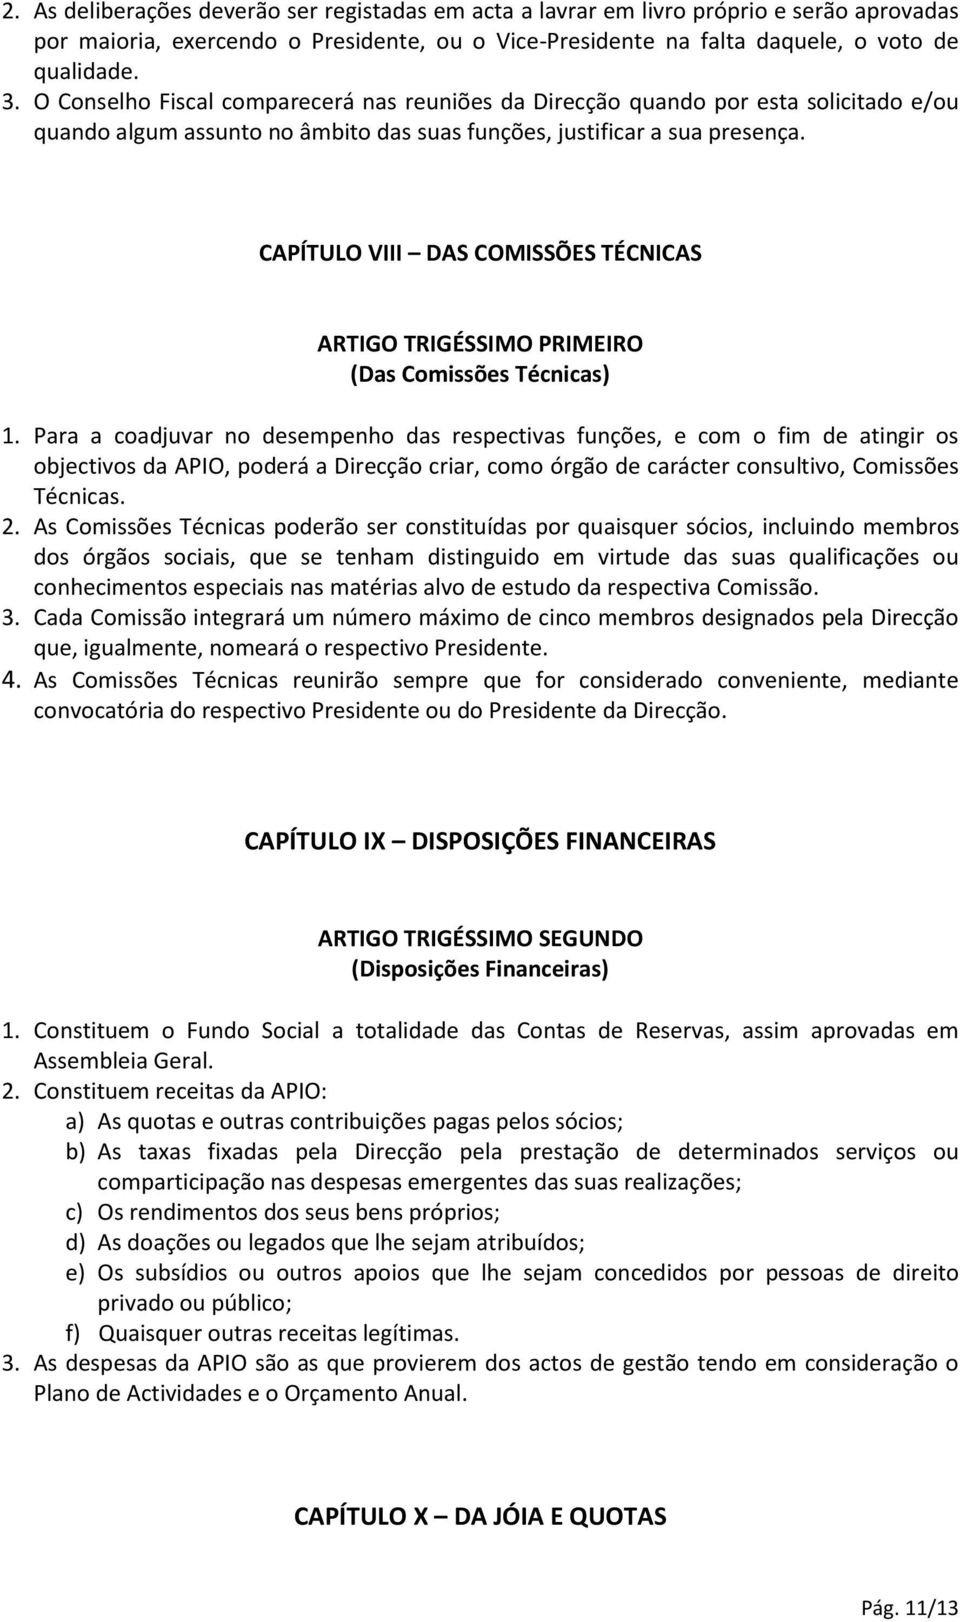 CAPÍTULO VIII DAS COMISSÕES TÉCNICAS ARTIGO TRIGÉSSIMO PRIMEIRO (Das Comissões Técnicas) 1.